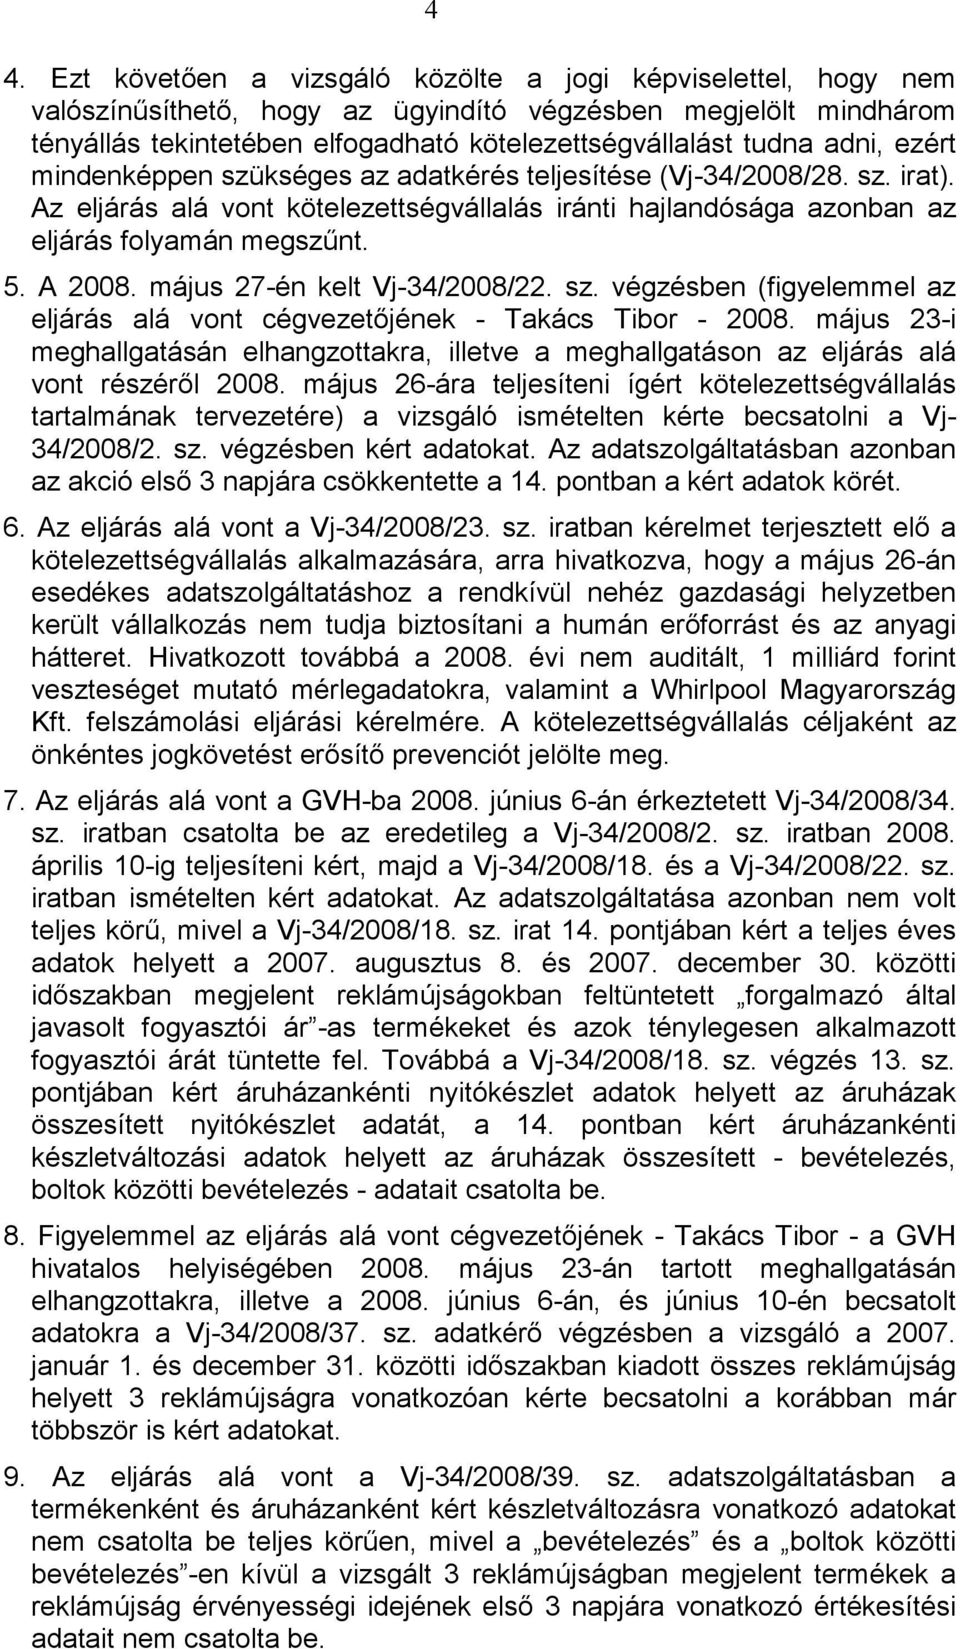 május 27-én kelt Vj-34/2008/22. sz. végzésben (figyelemmel az eljárás alá vont cégvezetıjének - Takács Tibor - 2008.